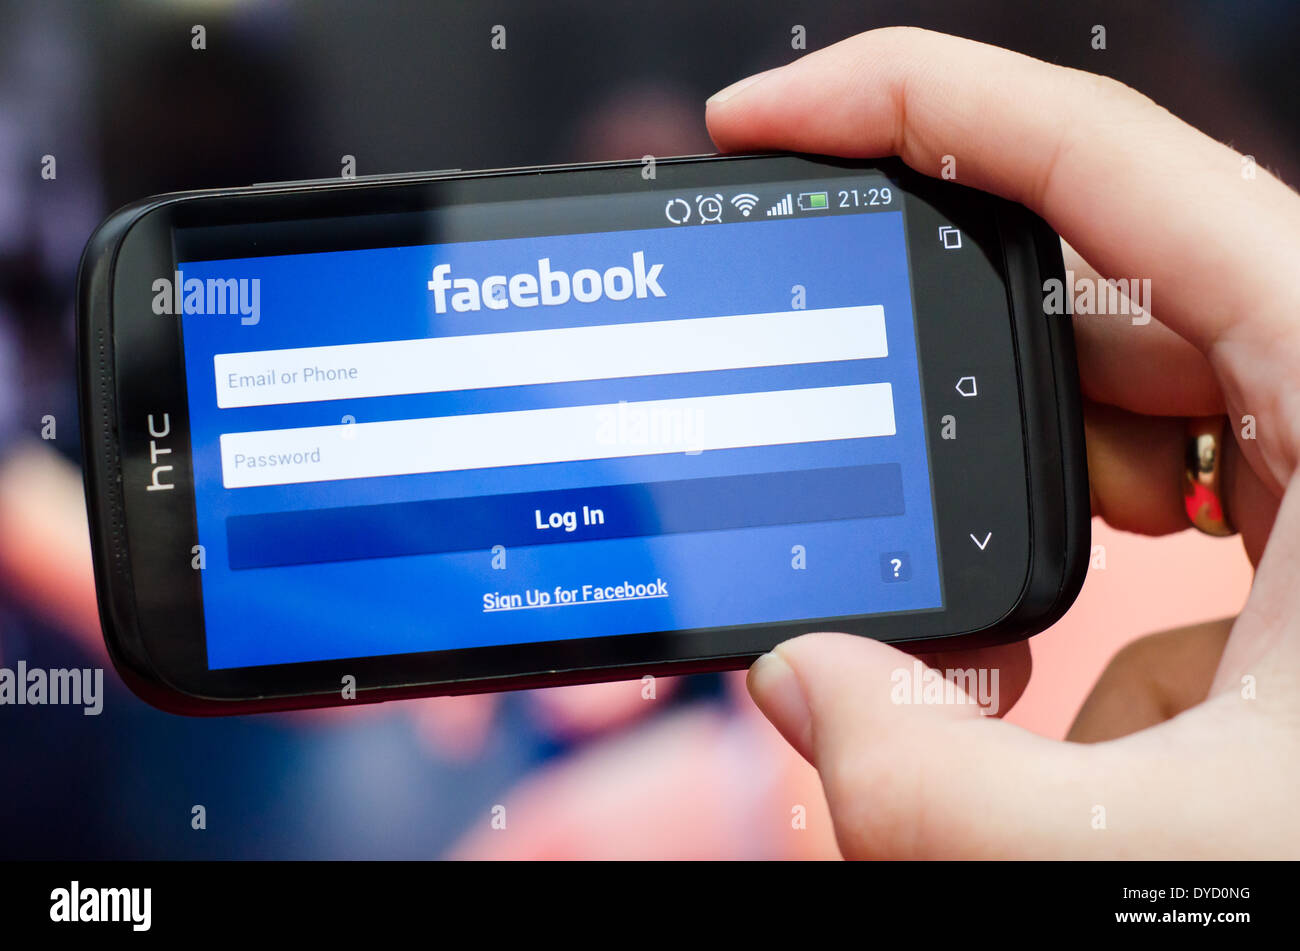 Mano azienda smartphone con il social network Facebook mobile app con interfaccia in inglese Foto Stock